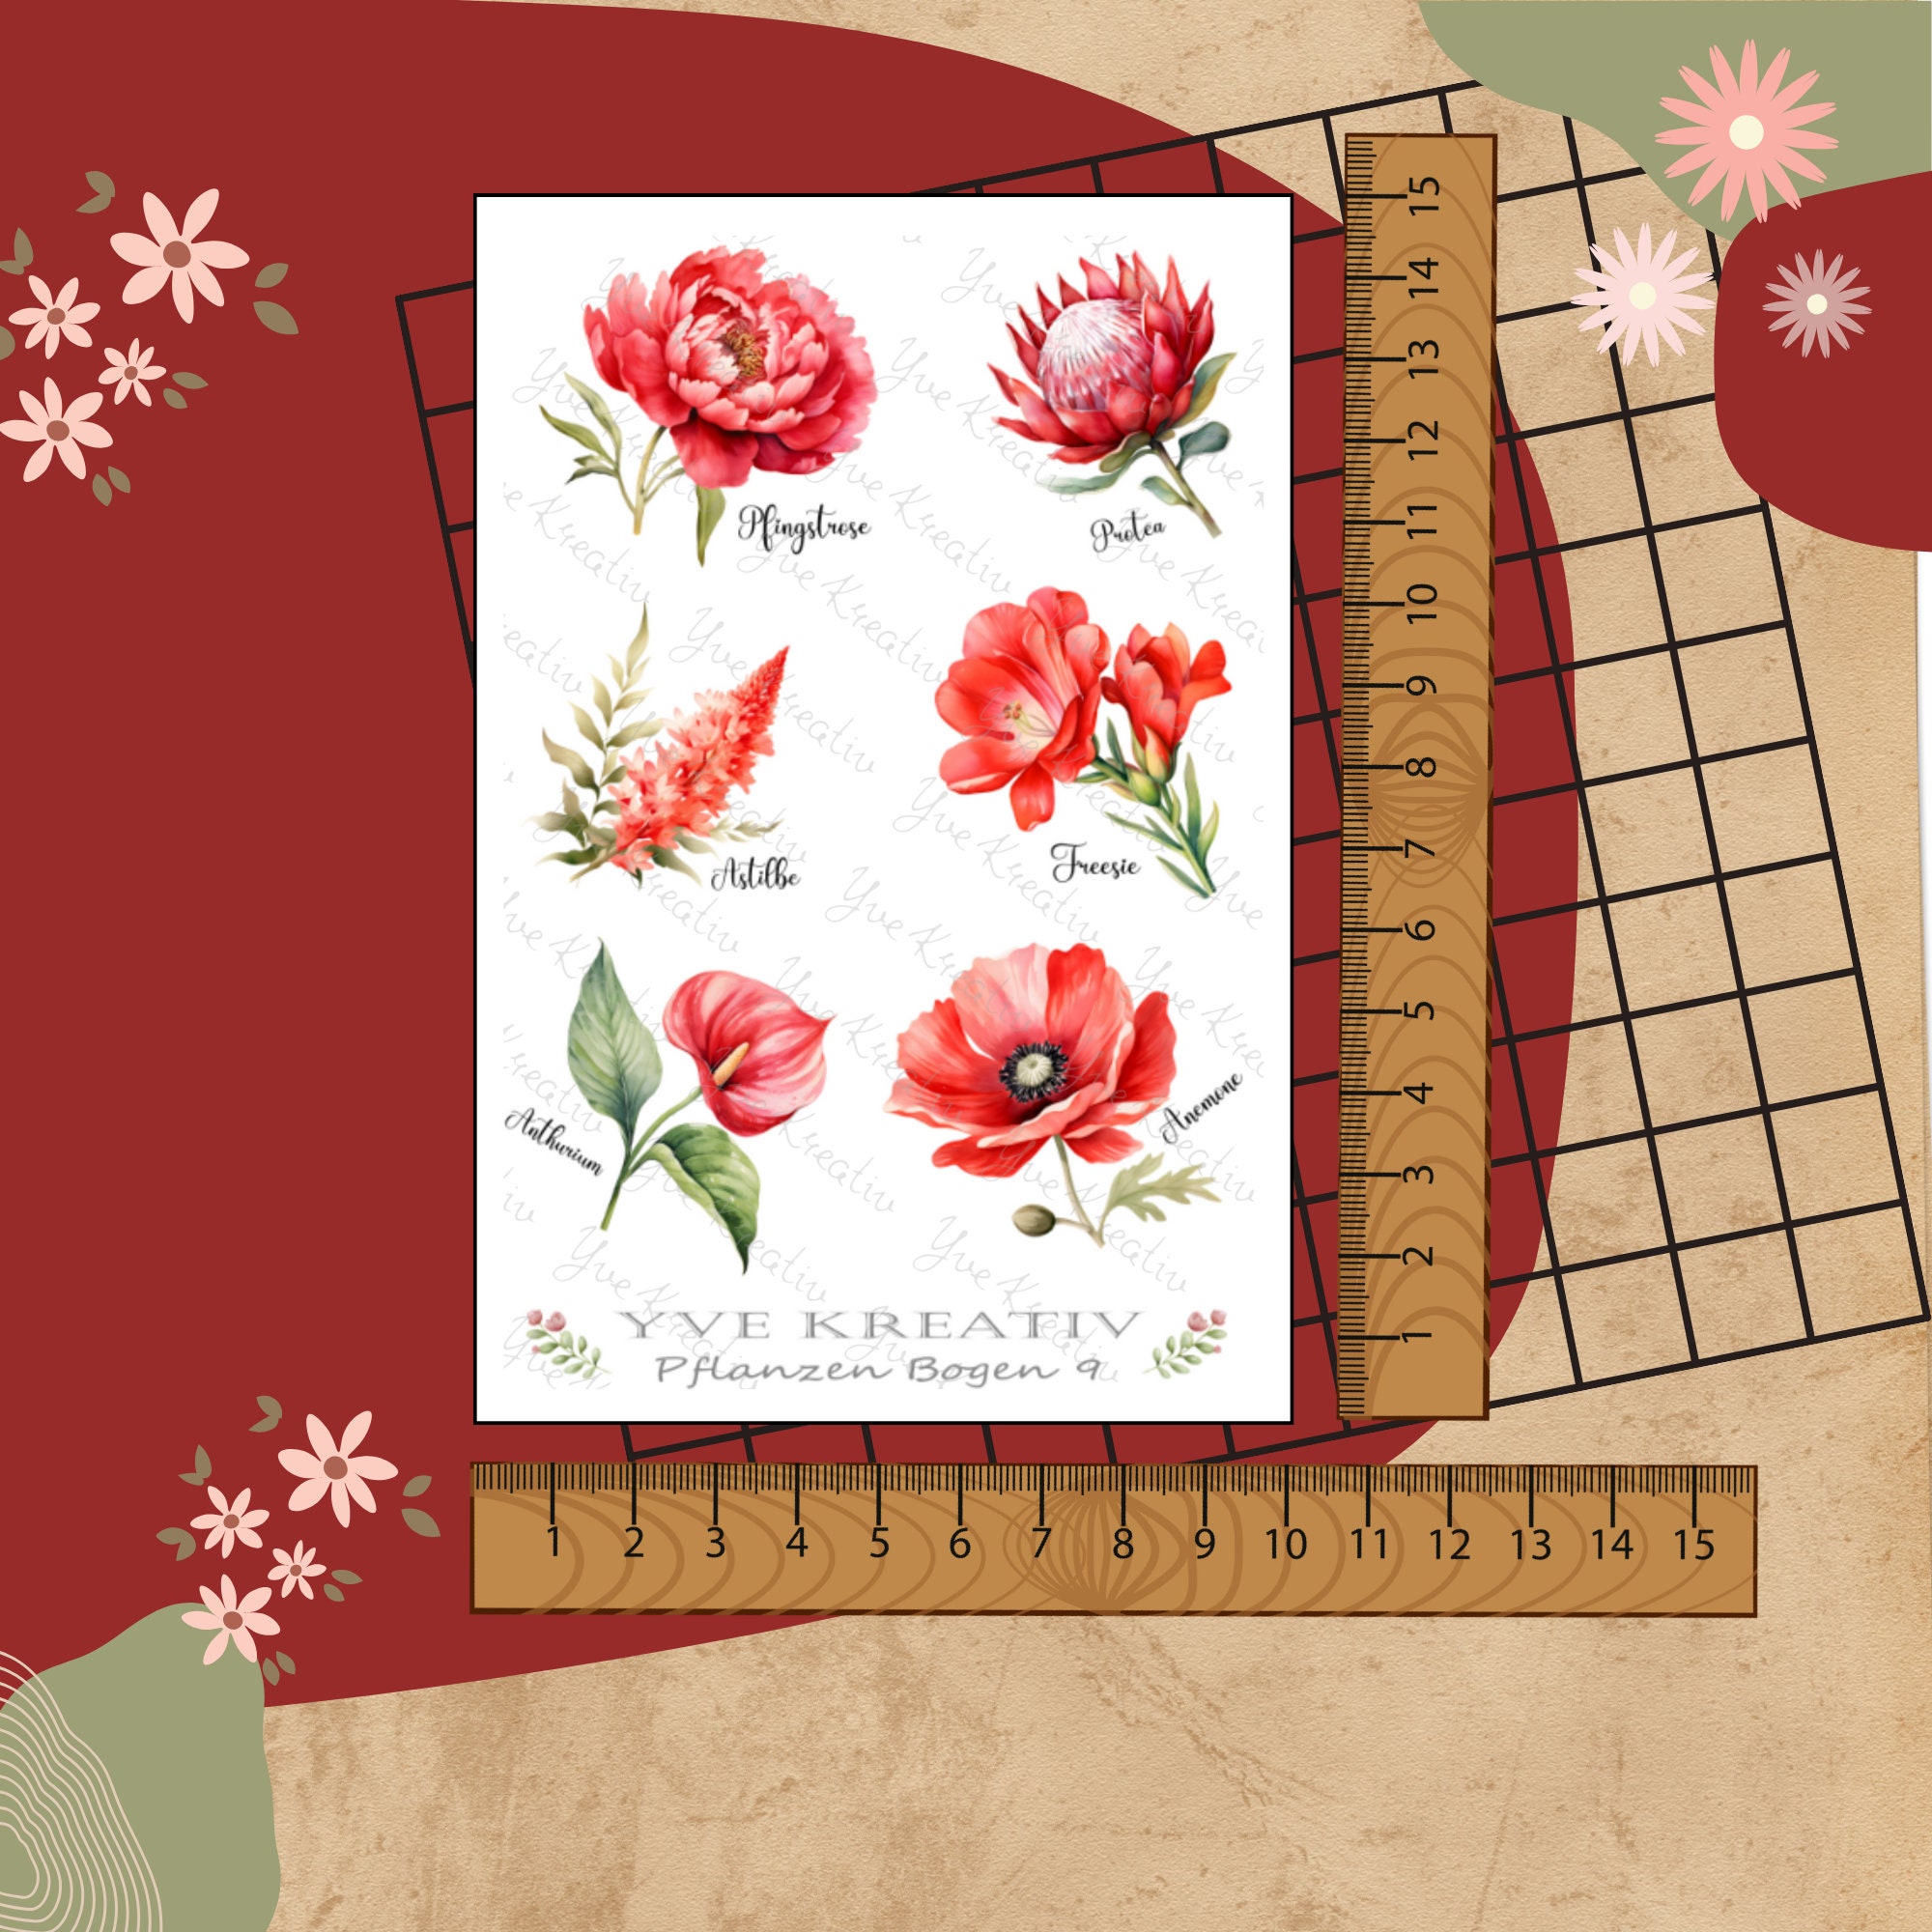 Sticker Bogen "Pflanzen Pflanzenkunde Blumen Rot " | Set - Aufkleber 2 Stickerbogen zur Auswahl in Weiß - Transparent - Matt - Glanz